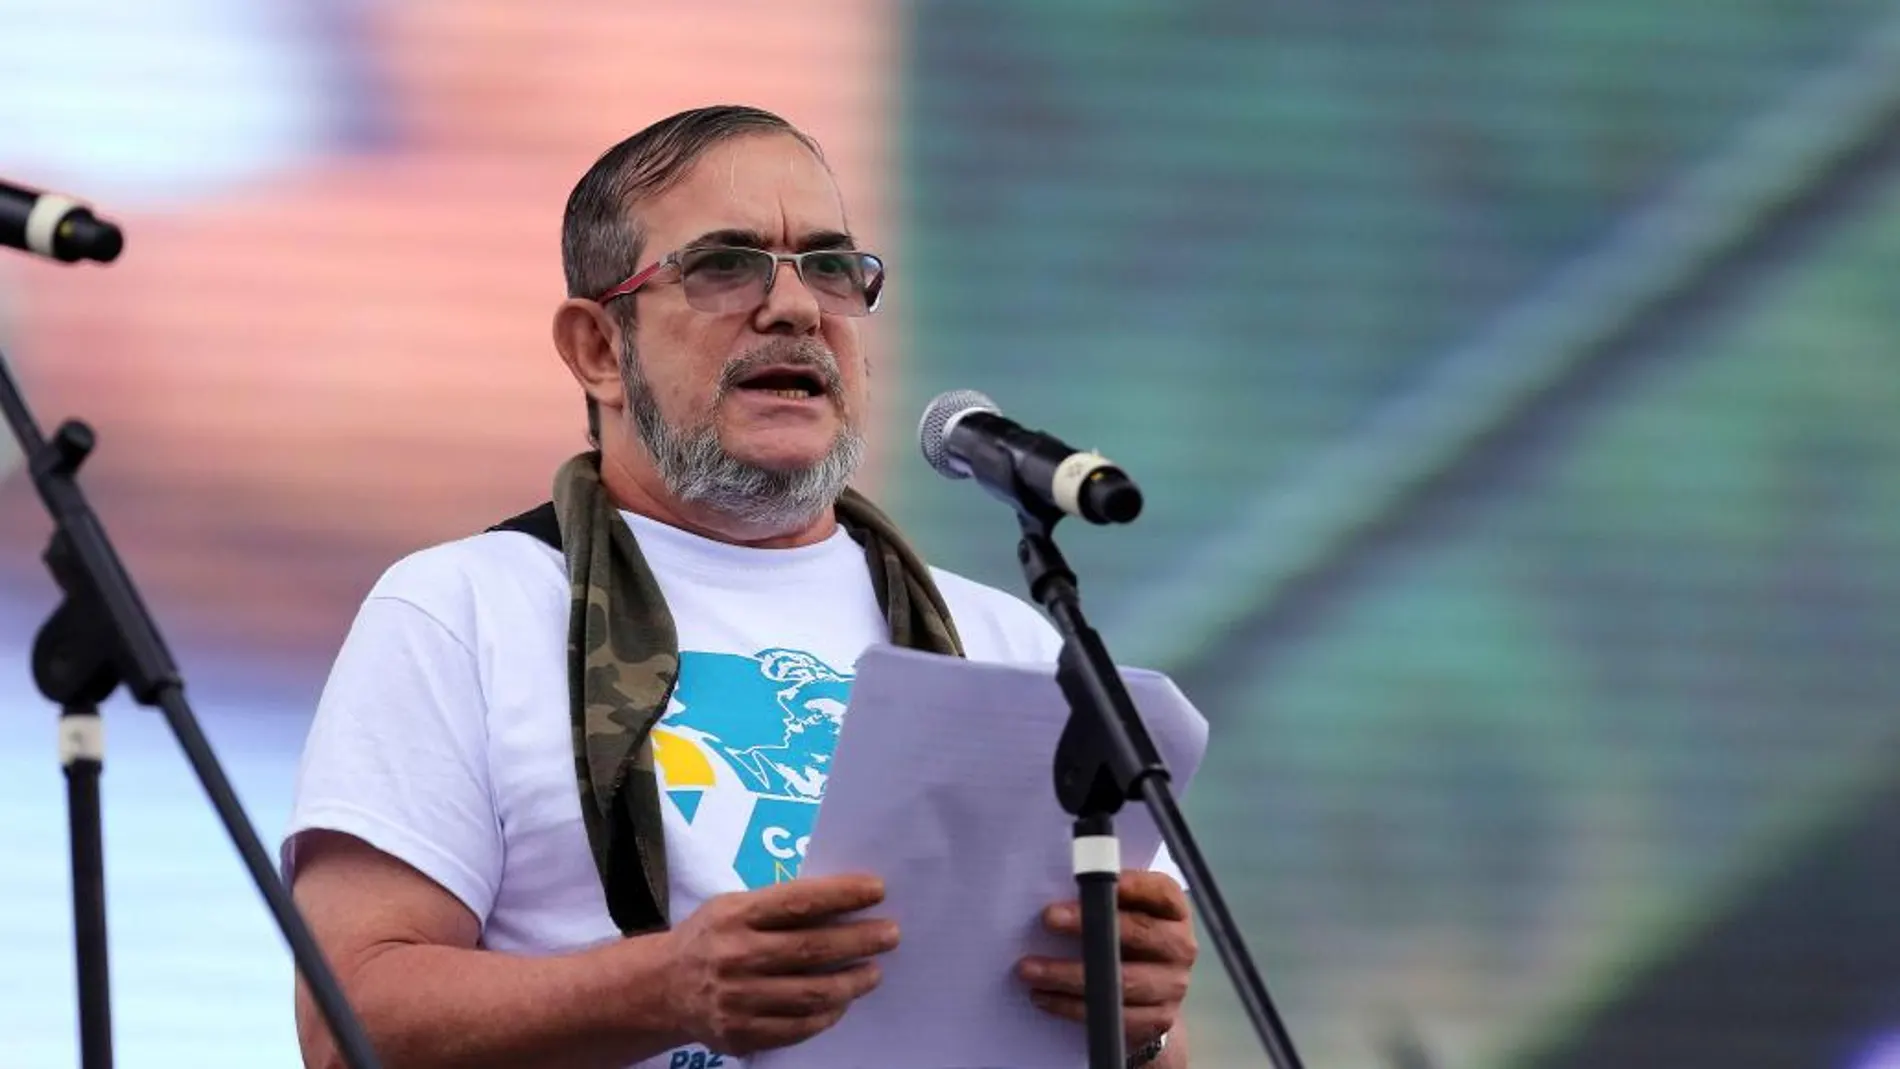 El líder de las FARC, Rodrigo Londoño Echeverri, alias "Timochenko", abrió la Conferencia Guerrillera en la que ratificarán el acuerdo de paz.